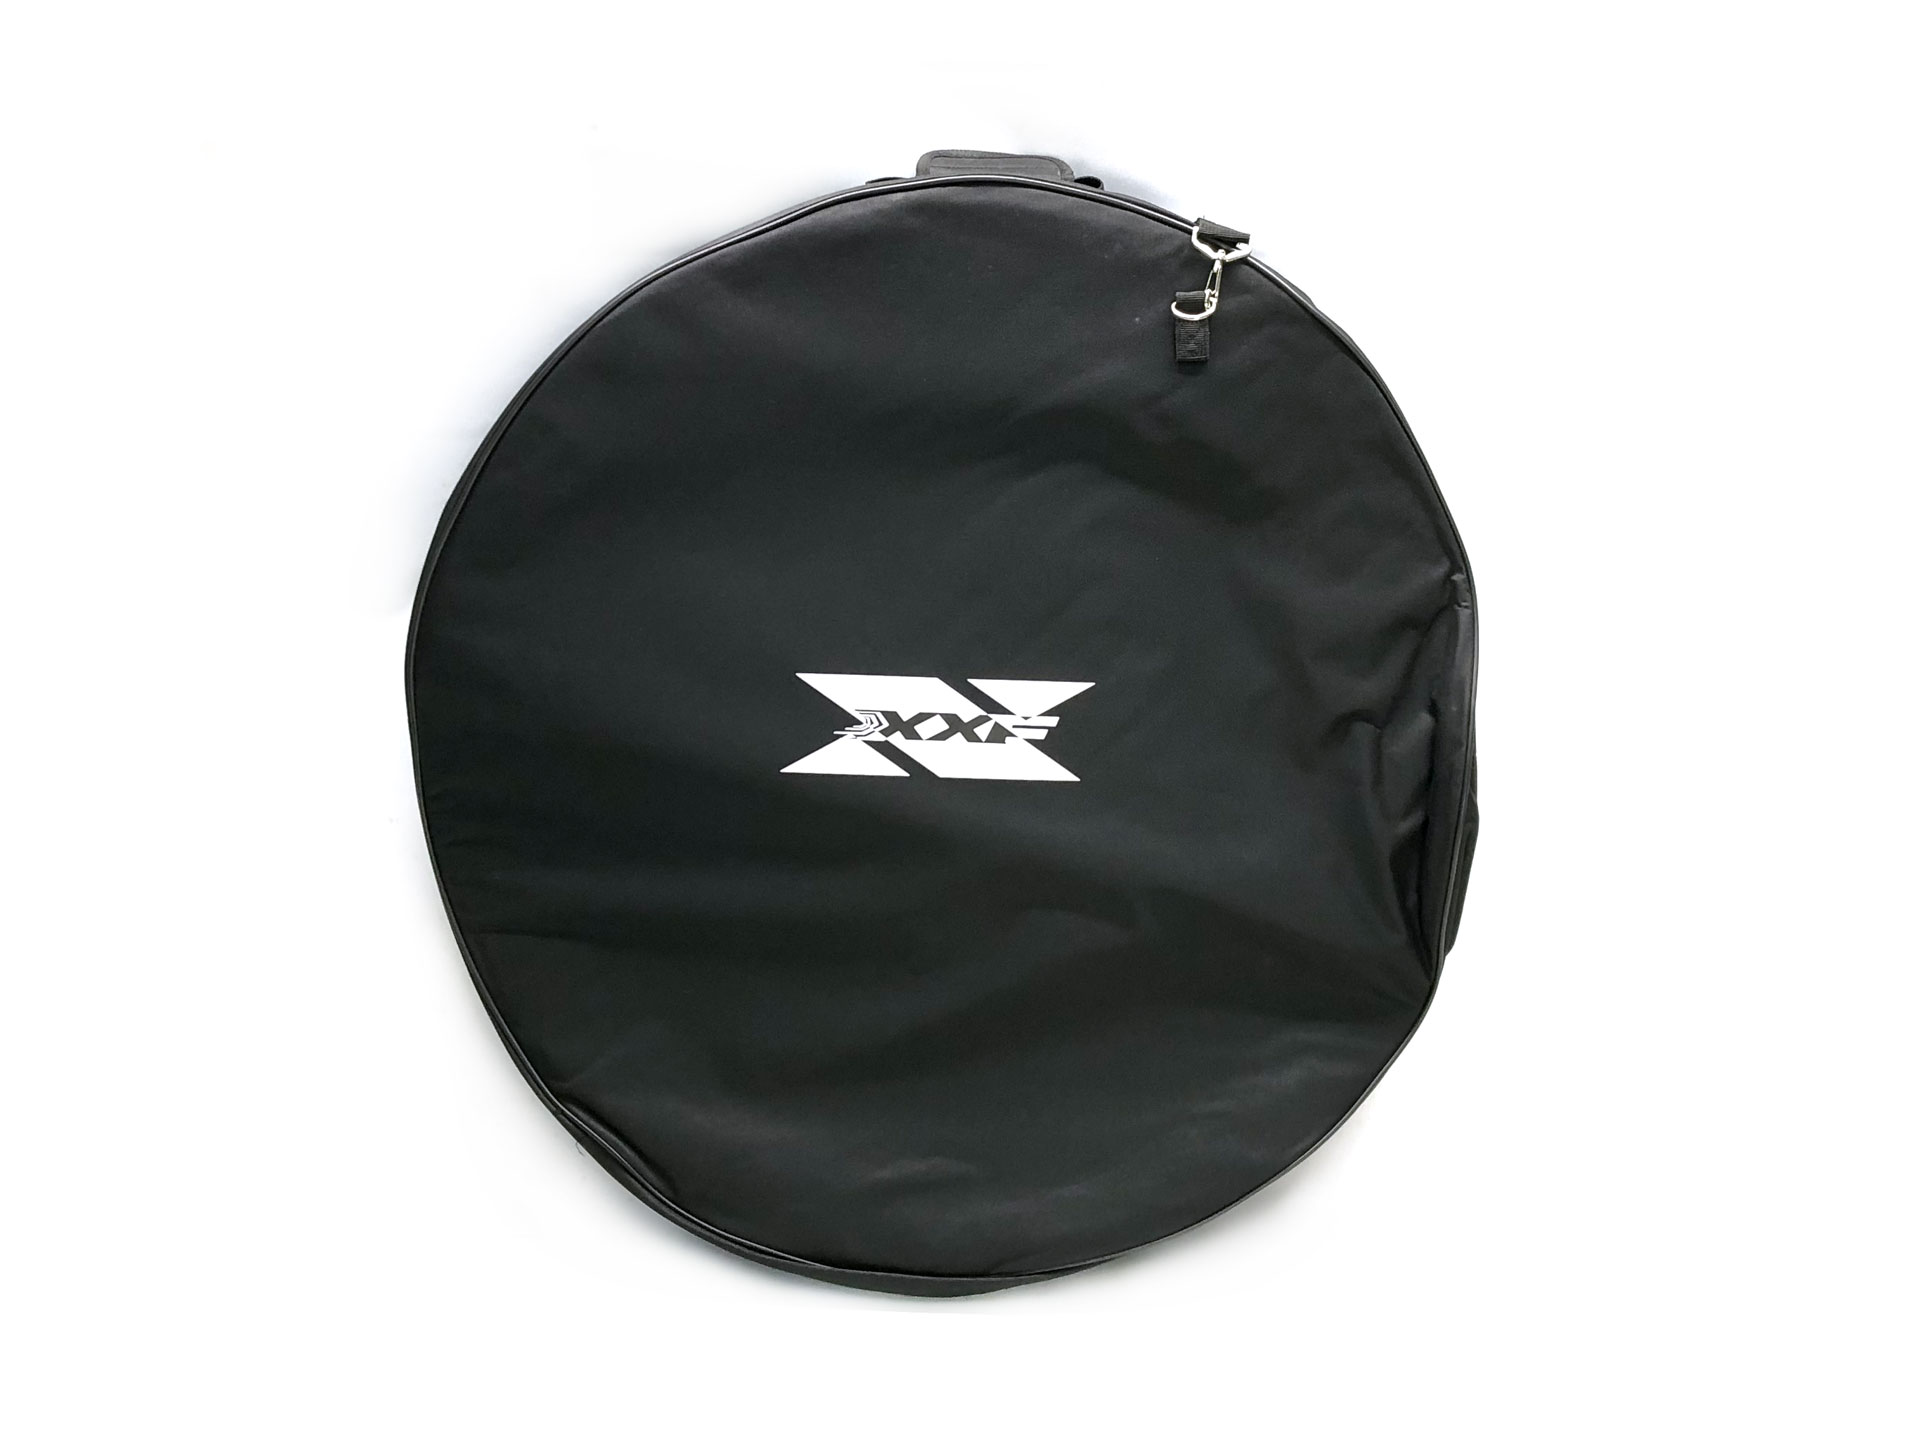 XXF Wheelset Transport Bag